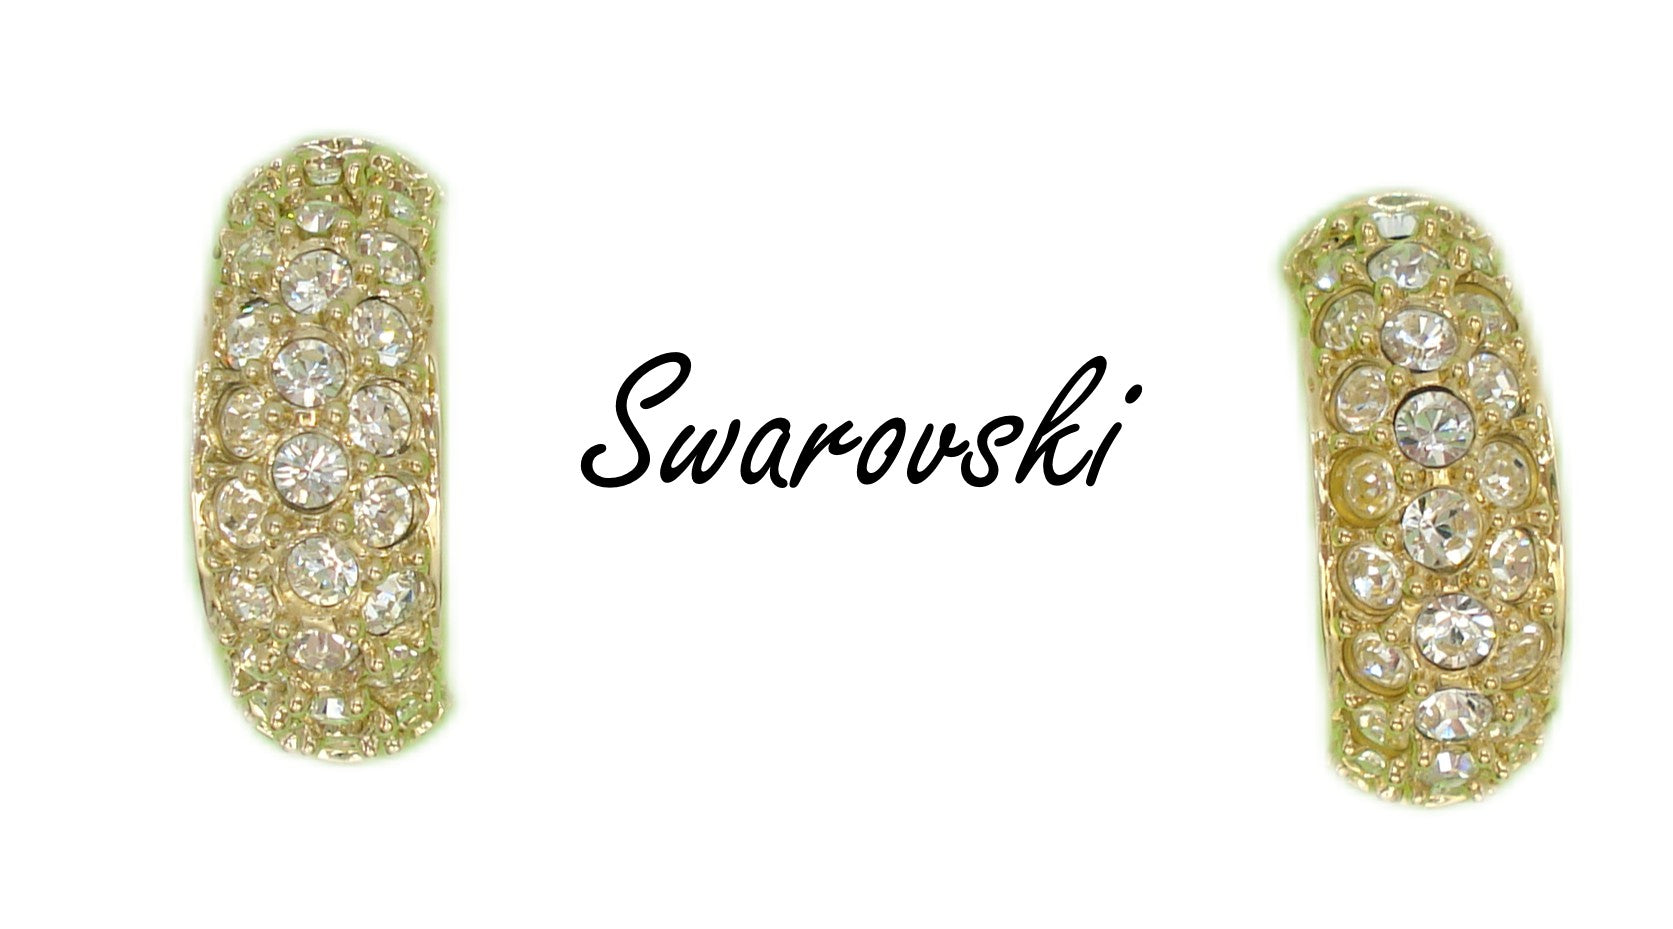 SWAROVSKI~Post Earrings Gold Tone Crystal Rhinestone Rounds Half Hoop 7/8"